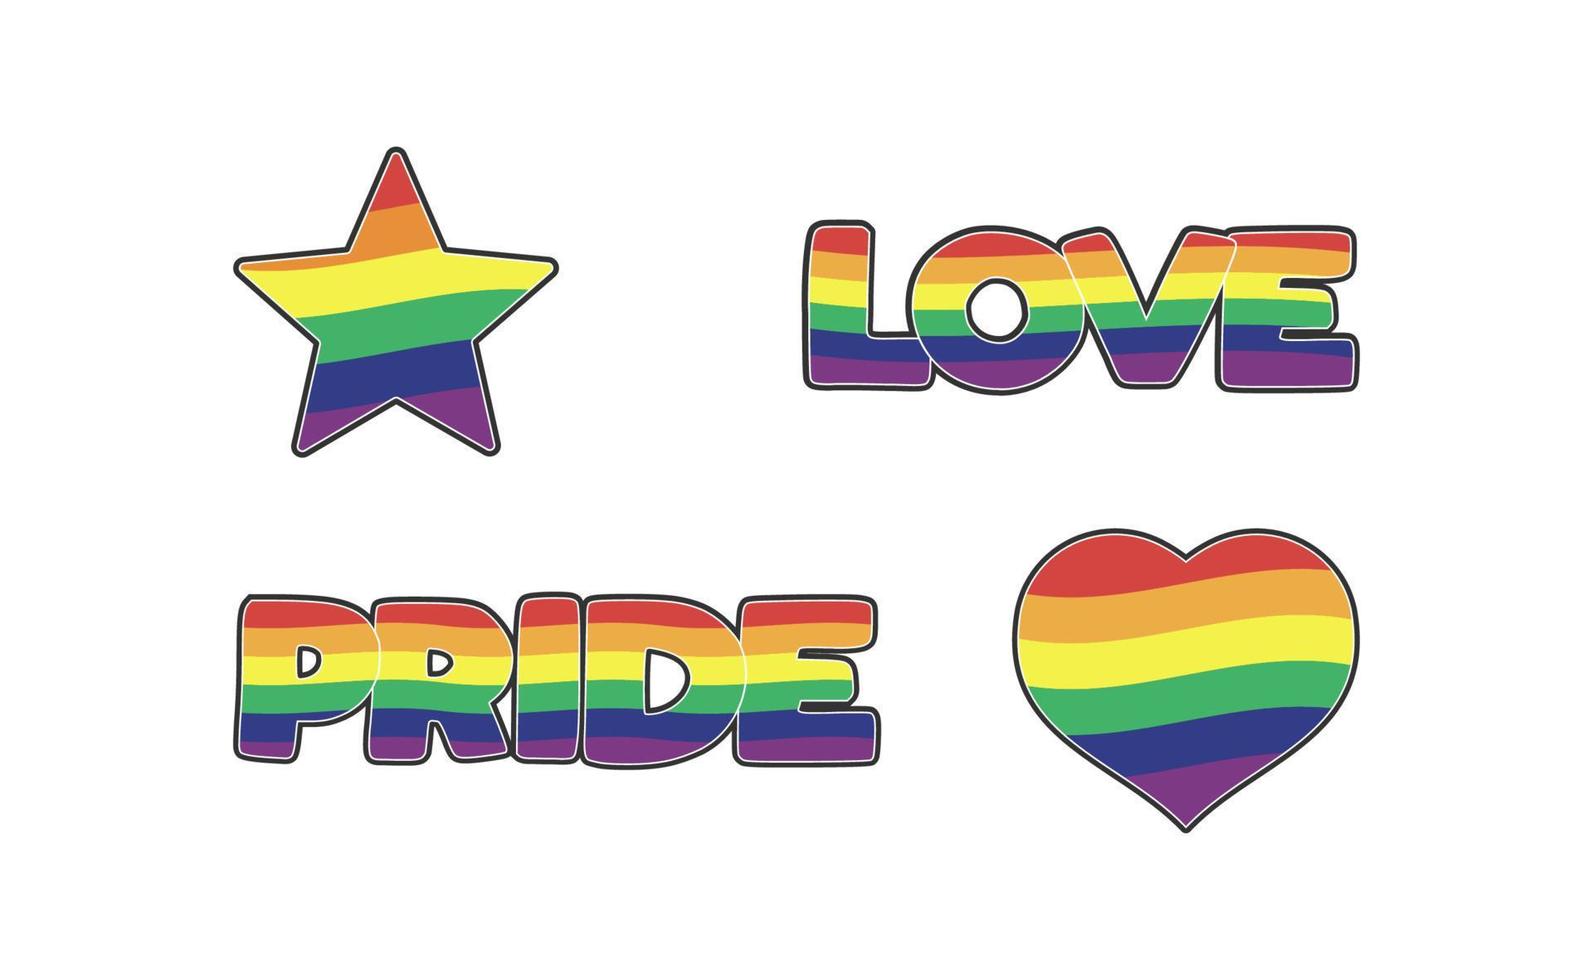 uppsättning av lgbtq gemenskap klistermärken med flagga, stjärna och hjärta former med regnbåge färger. stolthet månad symboler och slogan. Gay parad ikoner. vektor